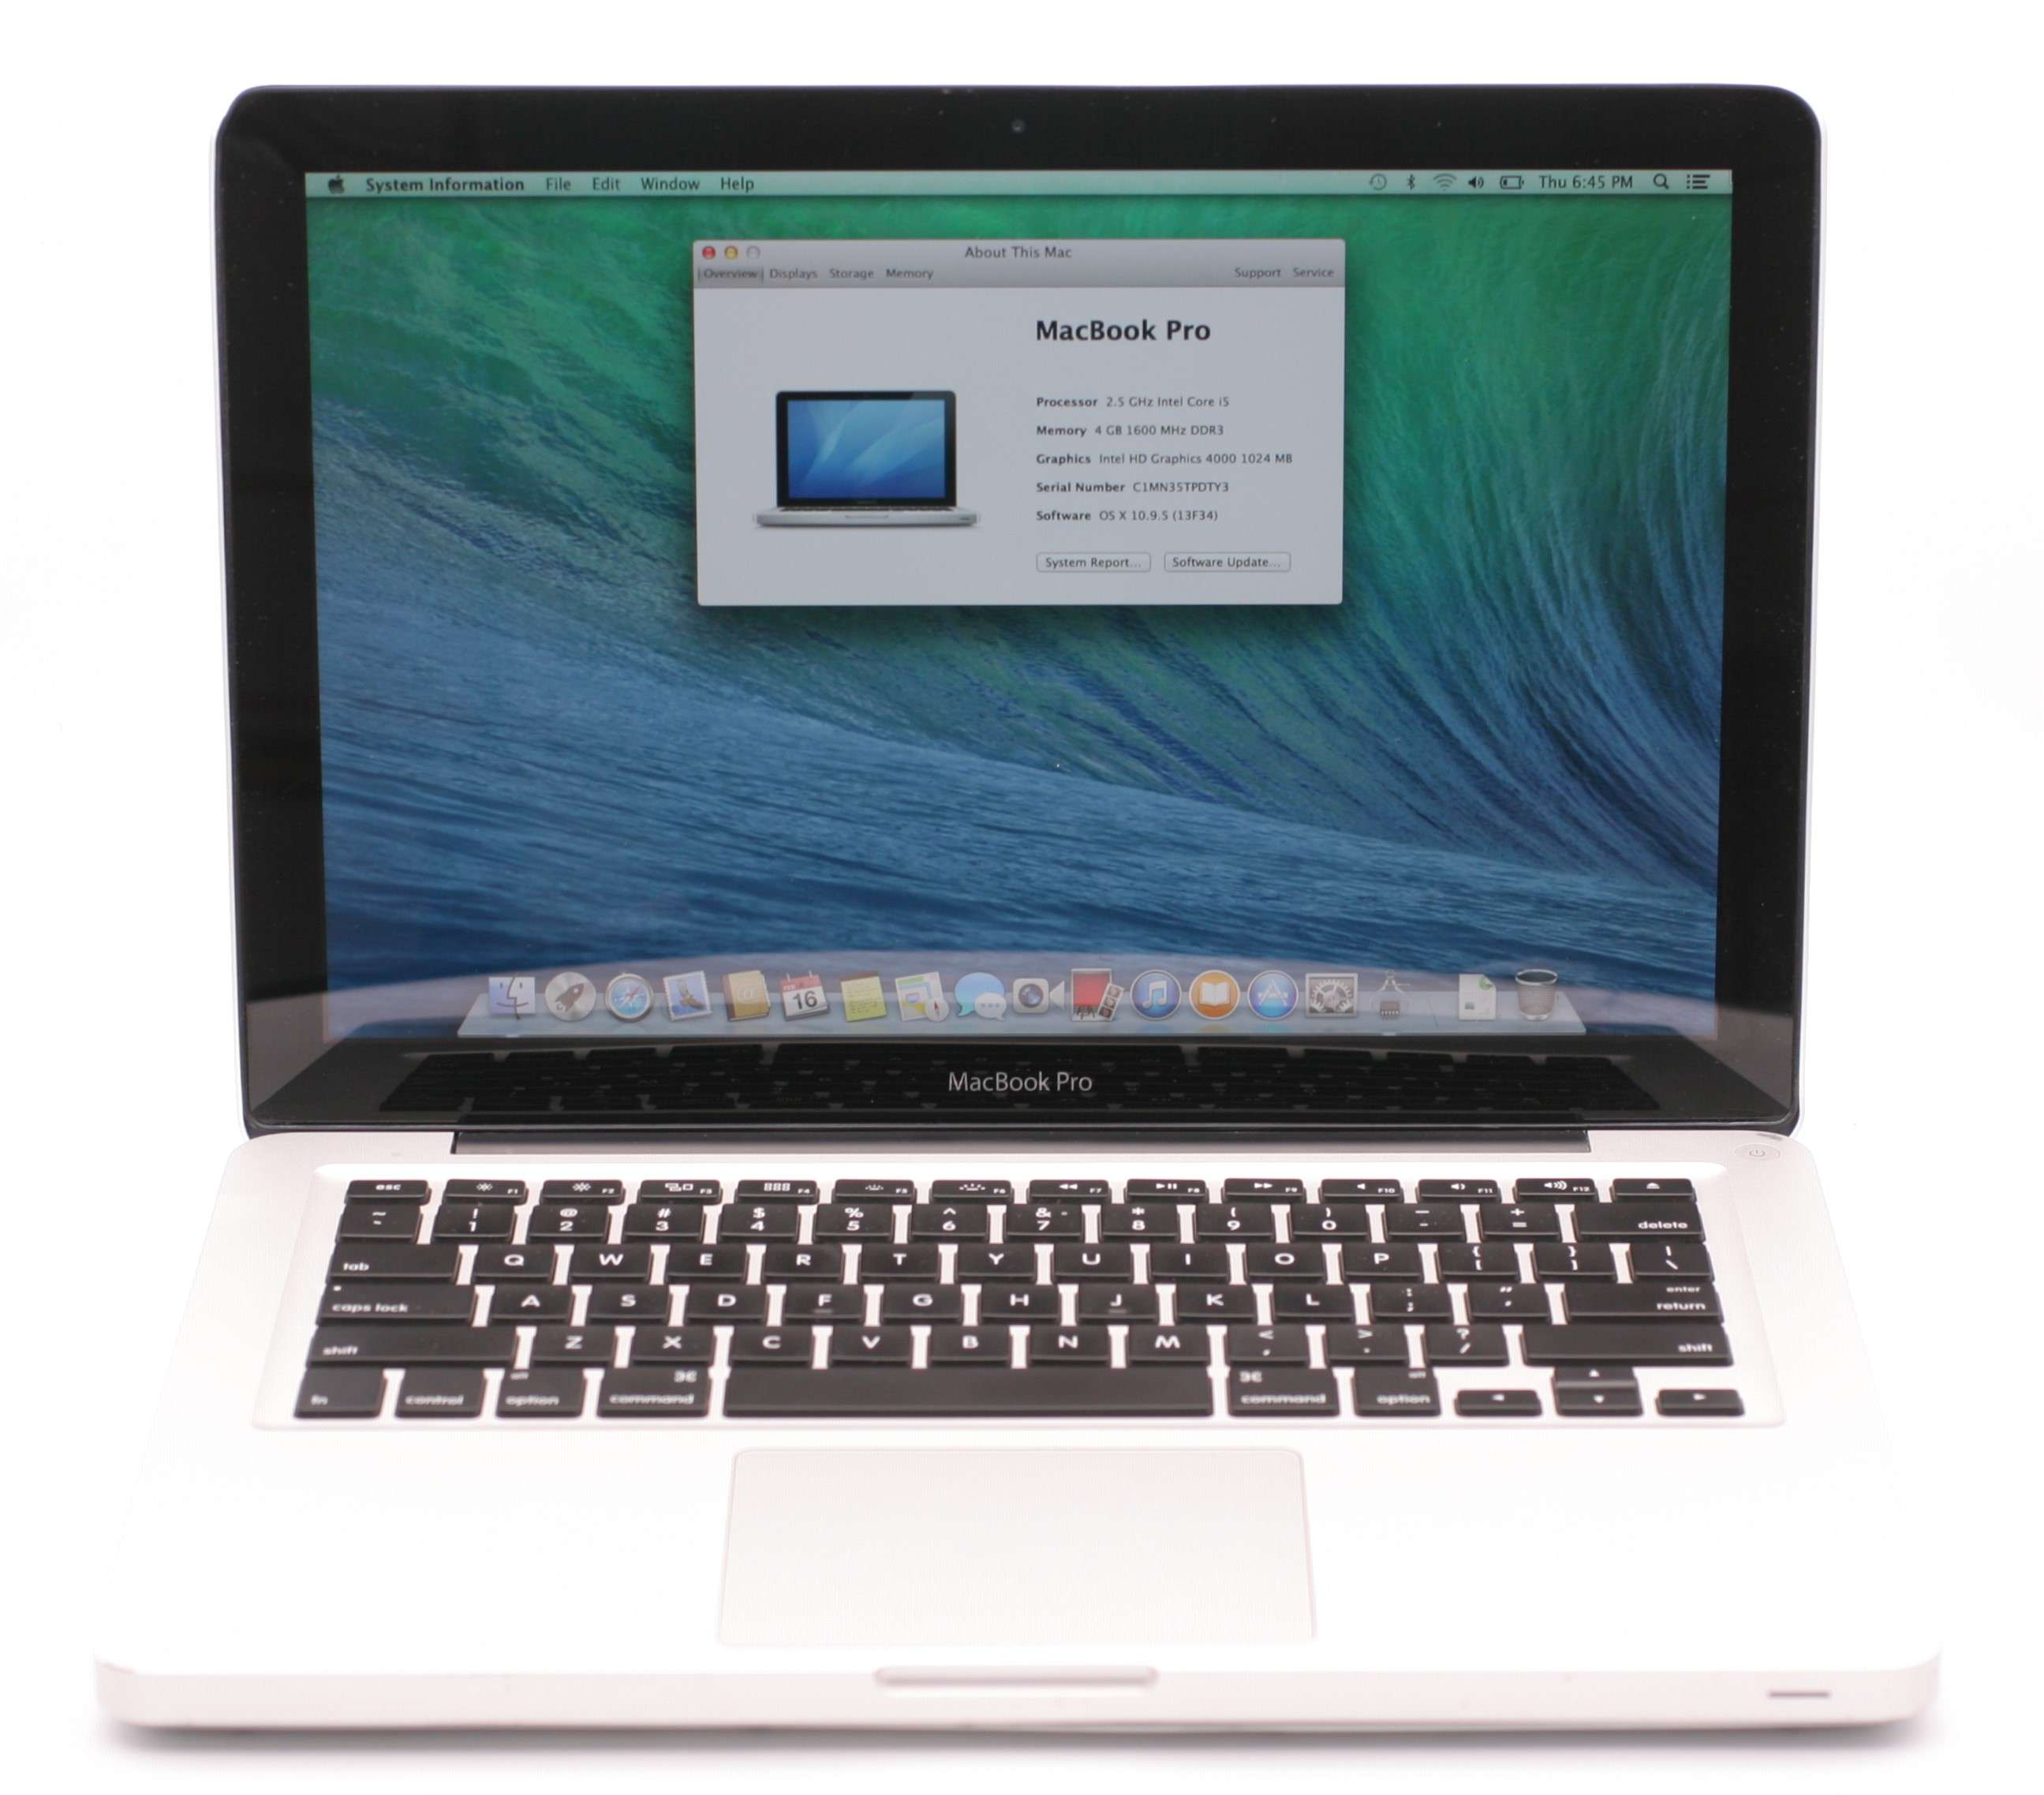 macbook pro 13 mid 2012 specs